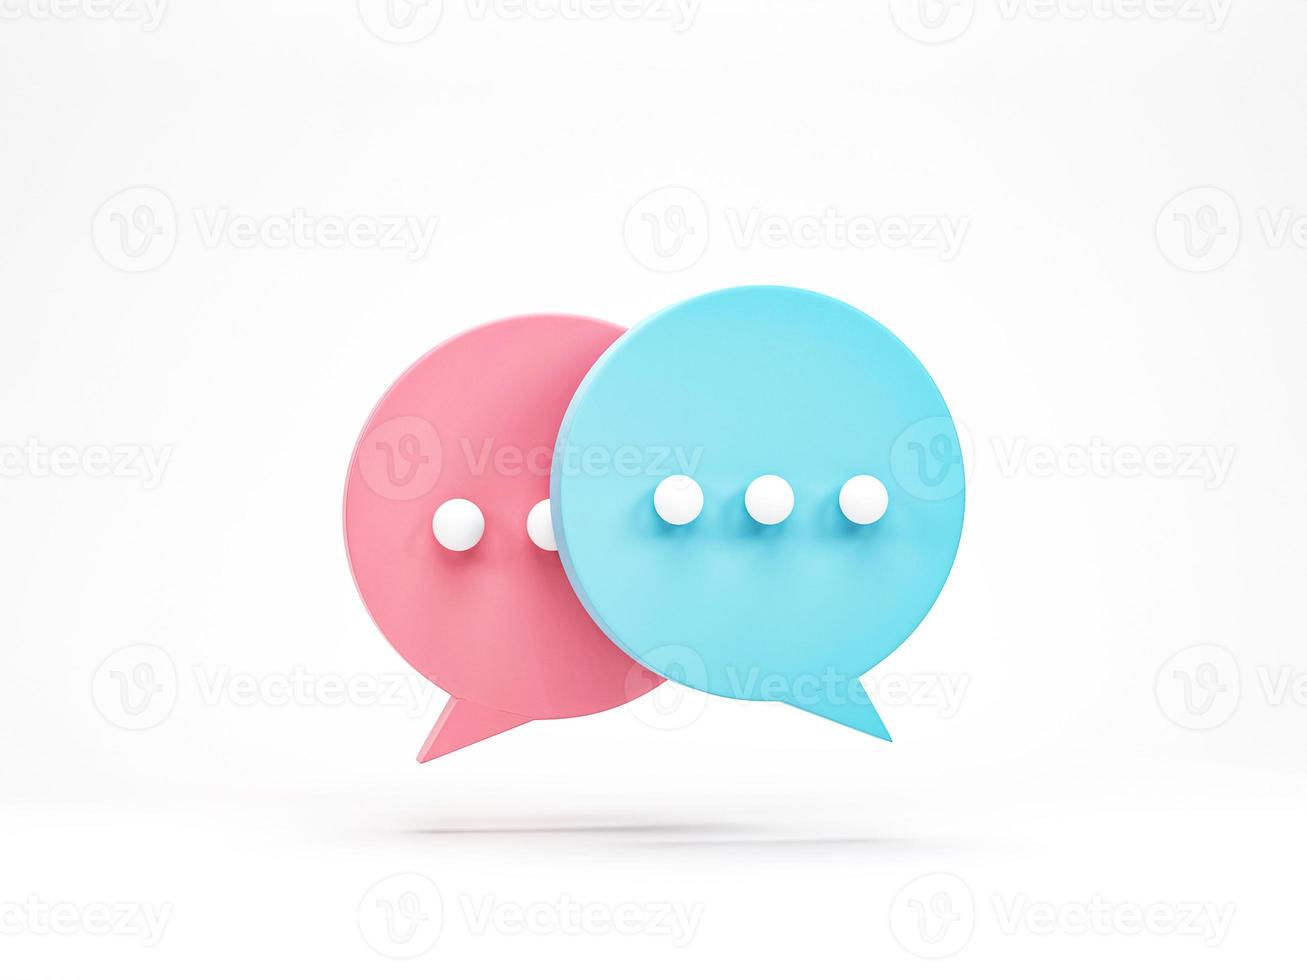 rendu 3d, illustration 3d. icône de bulle de chat isolée sur fond blanc. saisie de chat rose et bleu minimale. élément de conception pour les médias sociaux, les messages ou les commentaires. photo